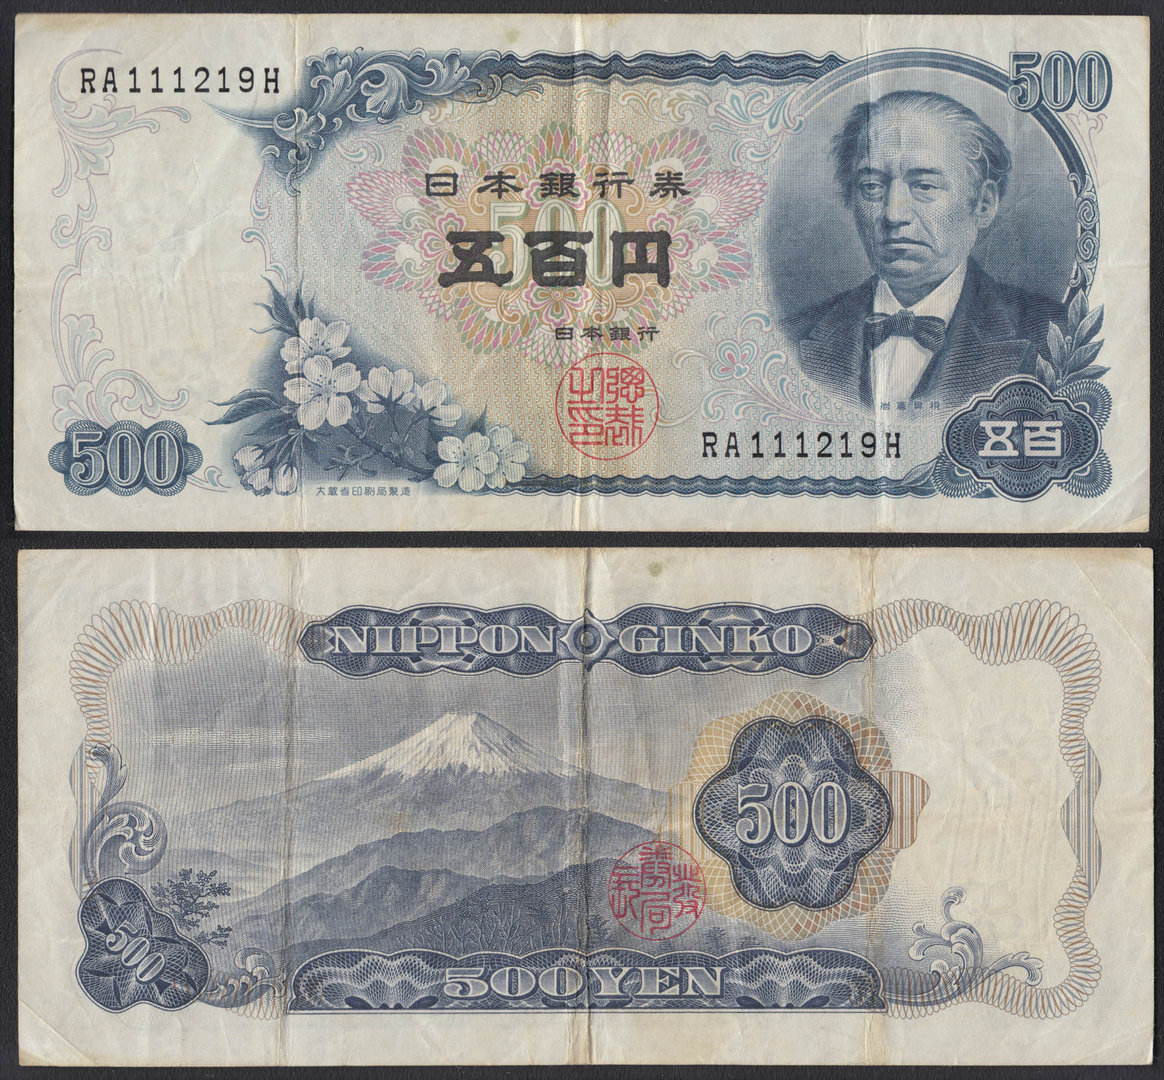 JAPON. 500 YEN DE 1969. CIRCULADO.